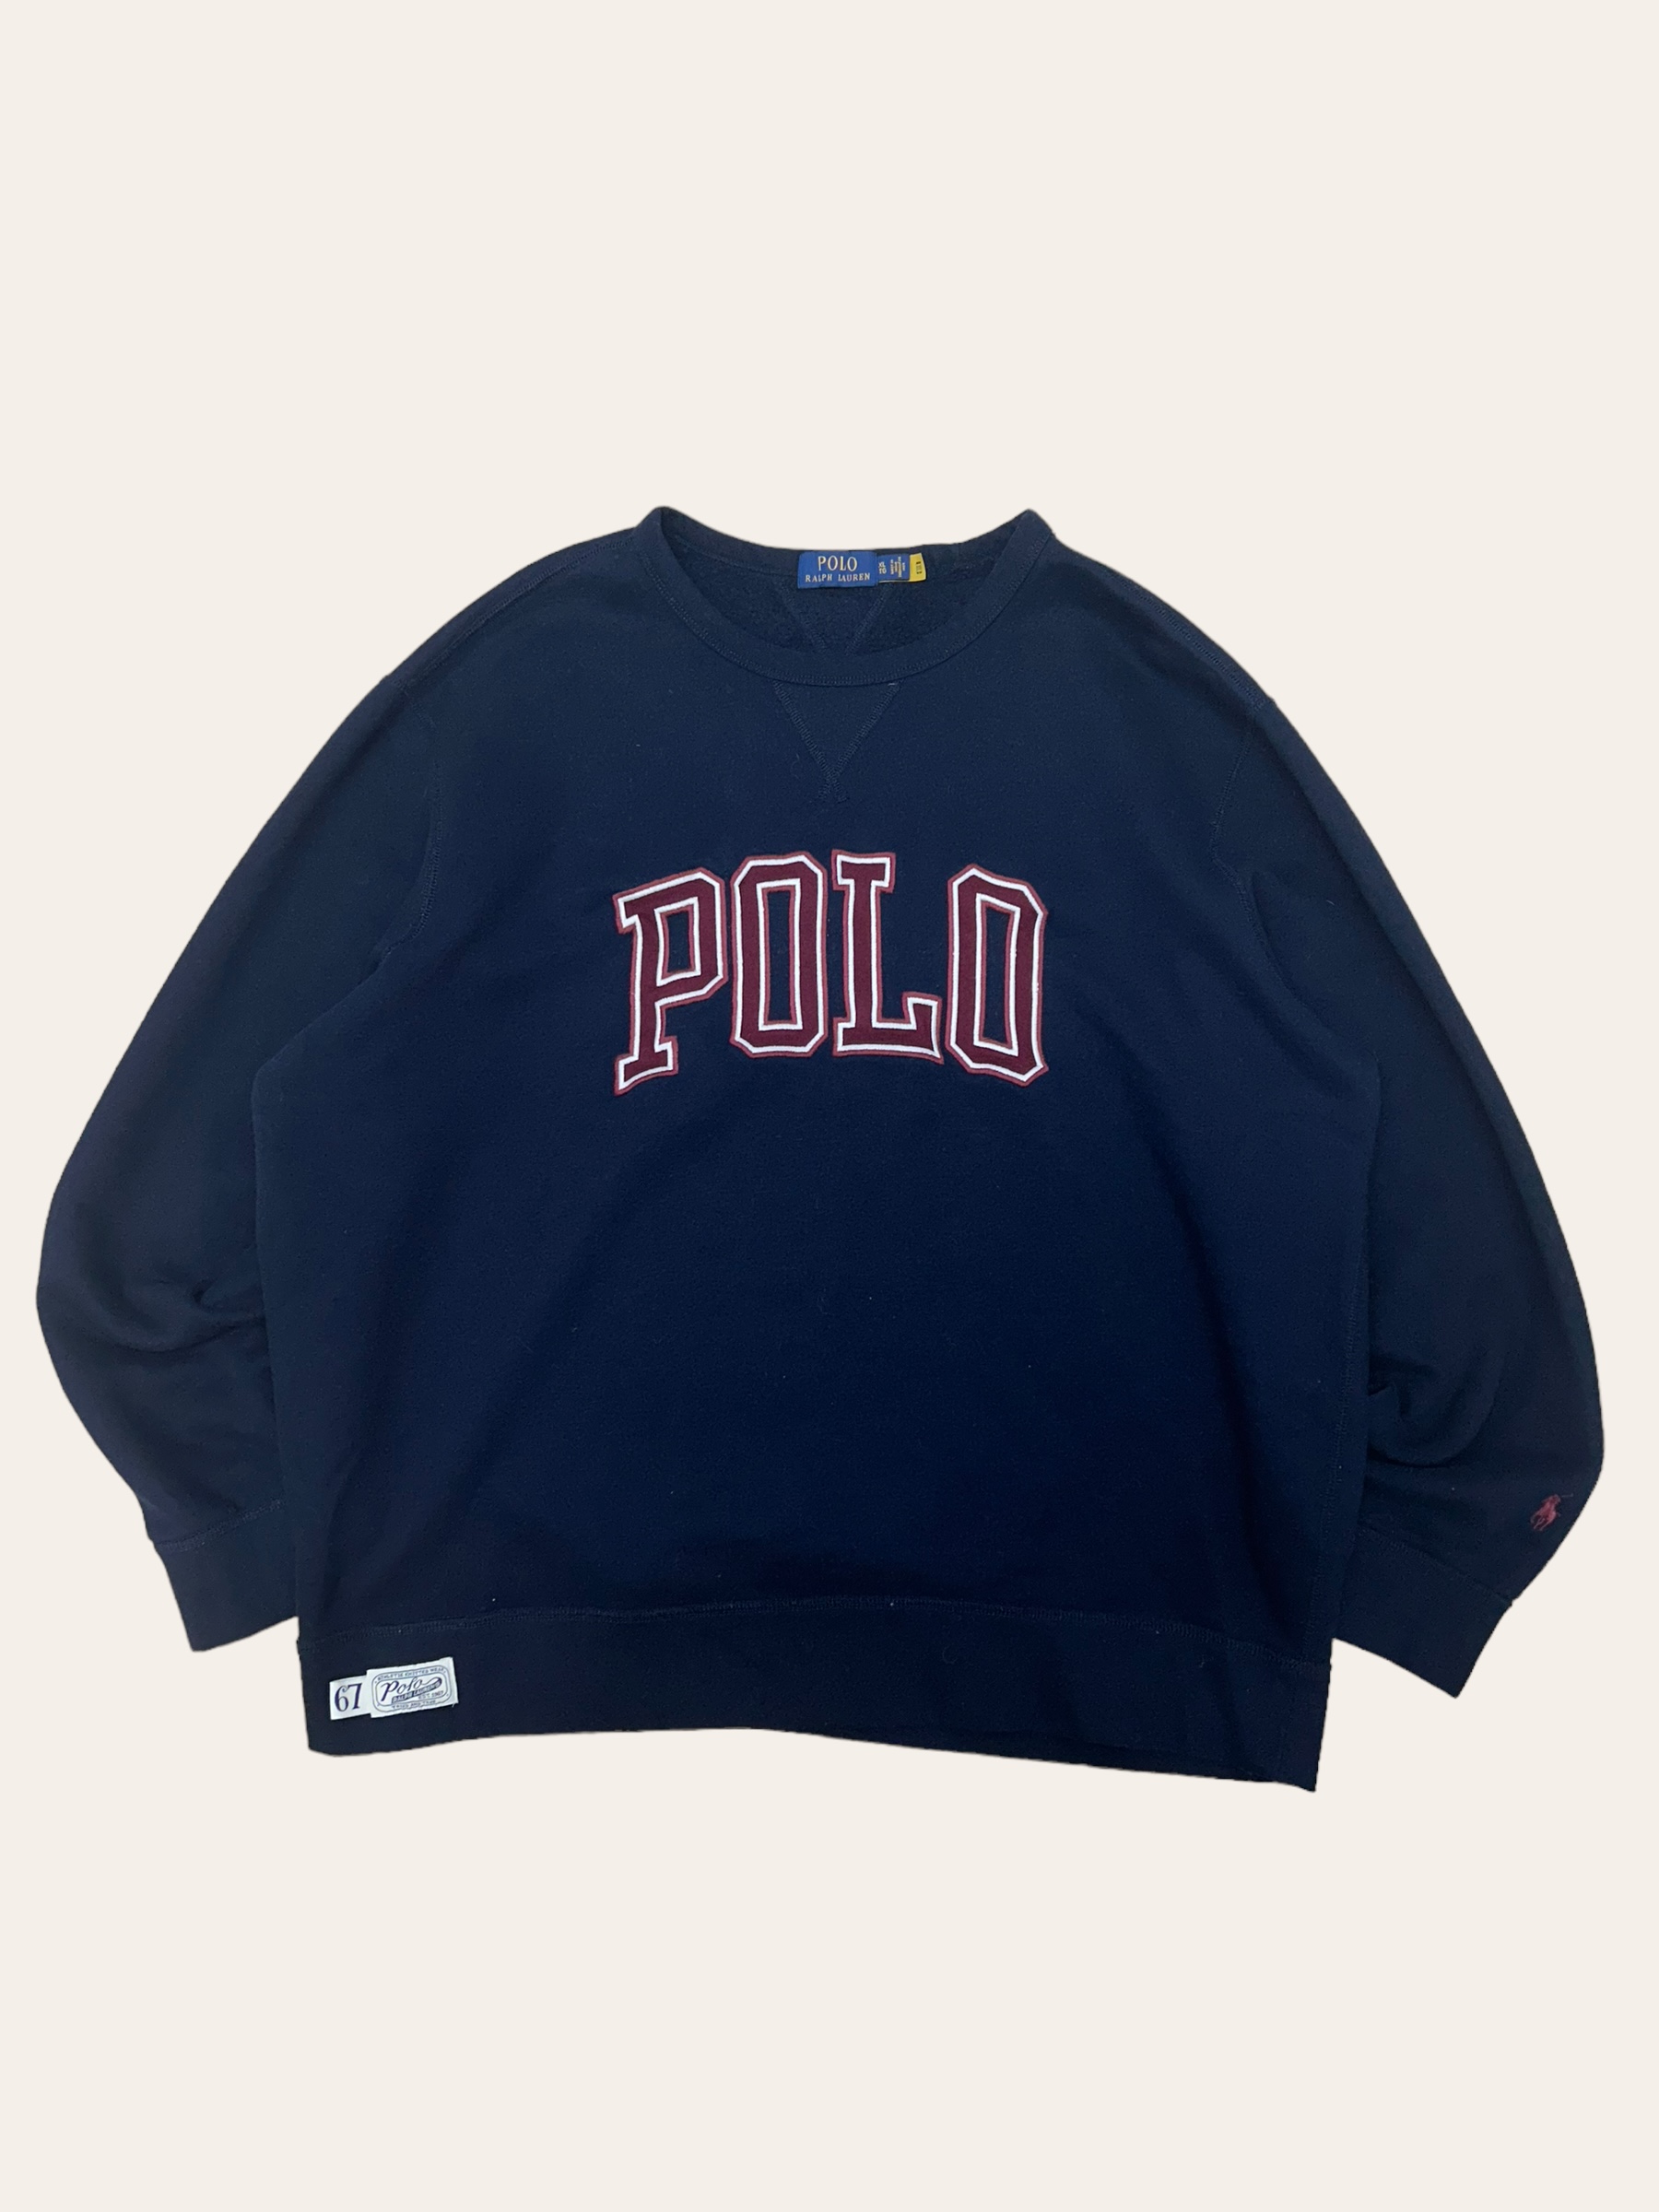 Polo ralph lauren navy spell out sweatshirt XL